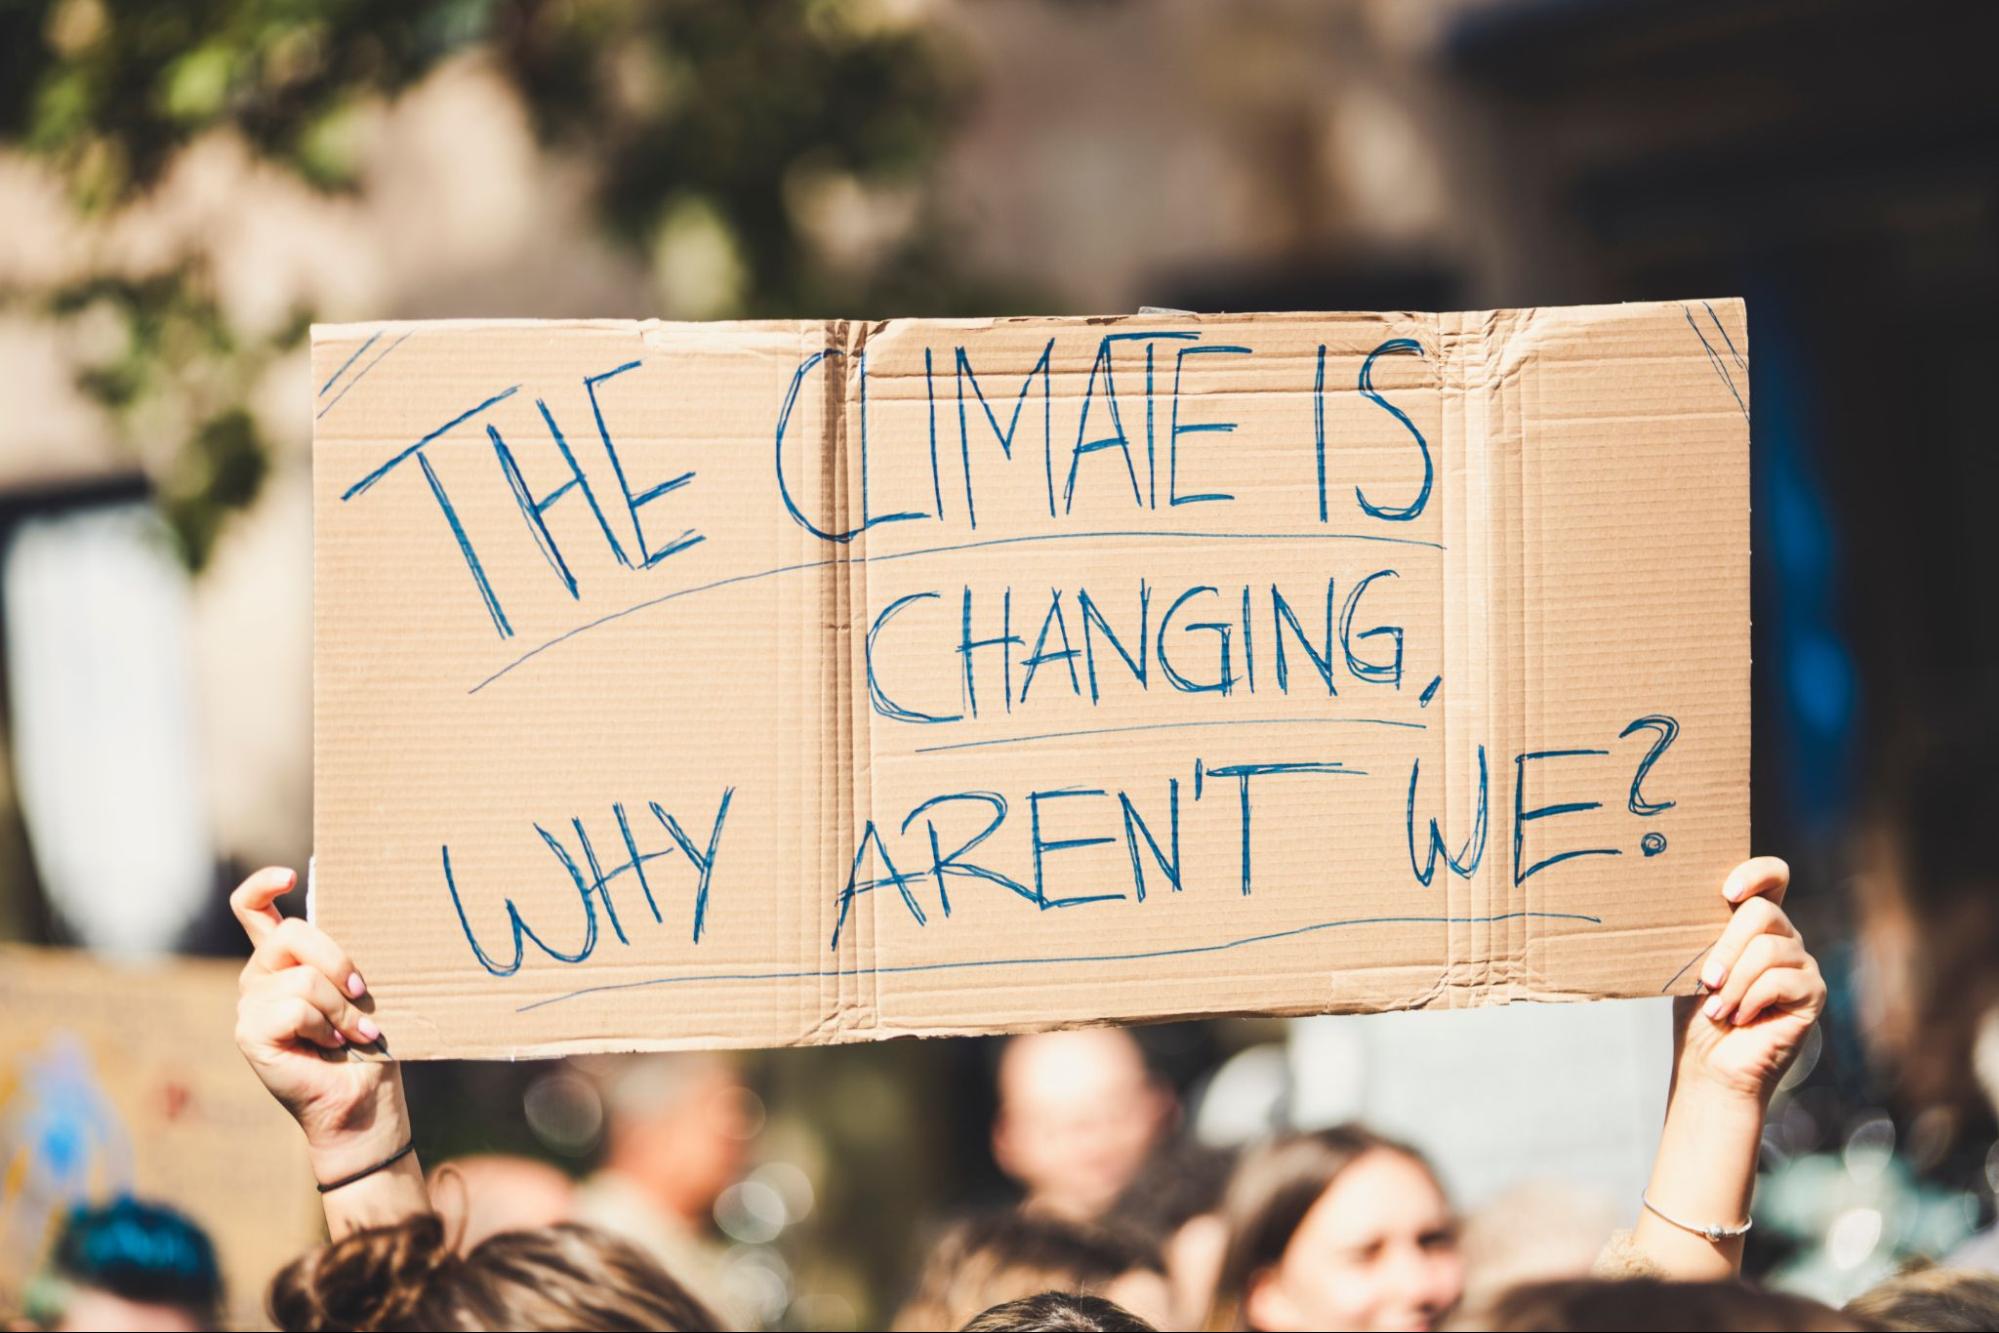 Des bras brandissant une pancarte disant : "Le climat change, pourquoi nele faisons-nous pas ?" lors d'une manifestation pour leclimat